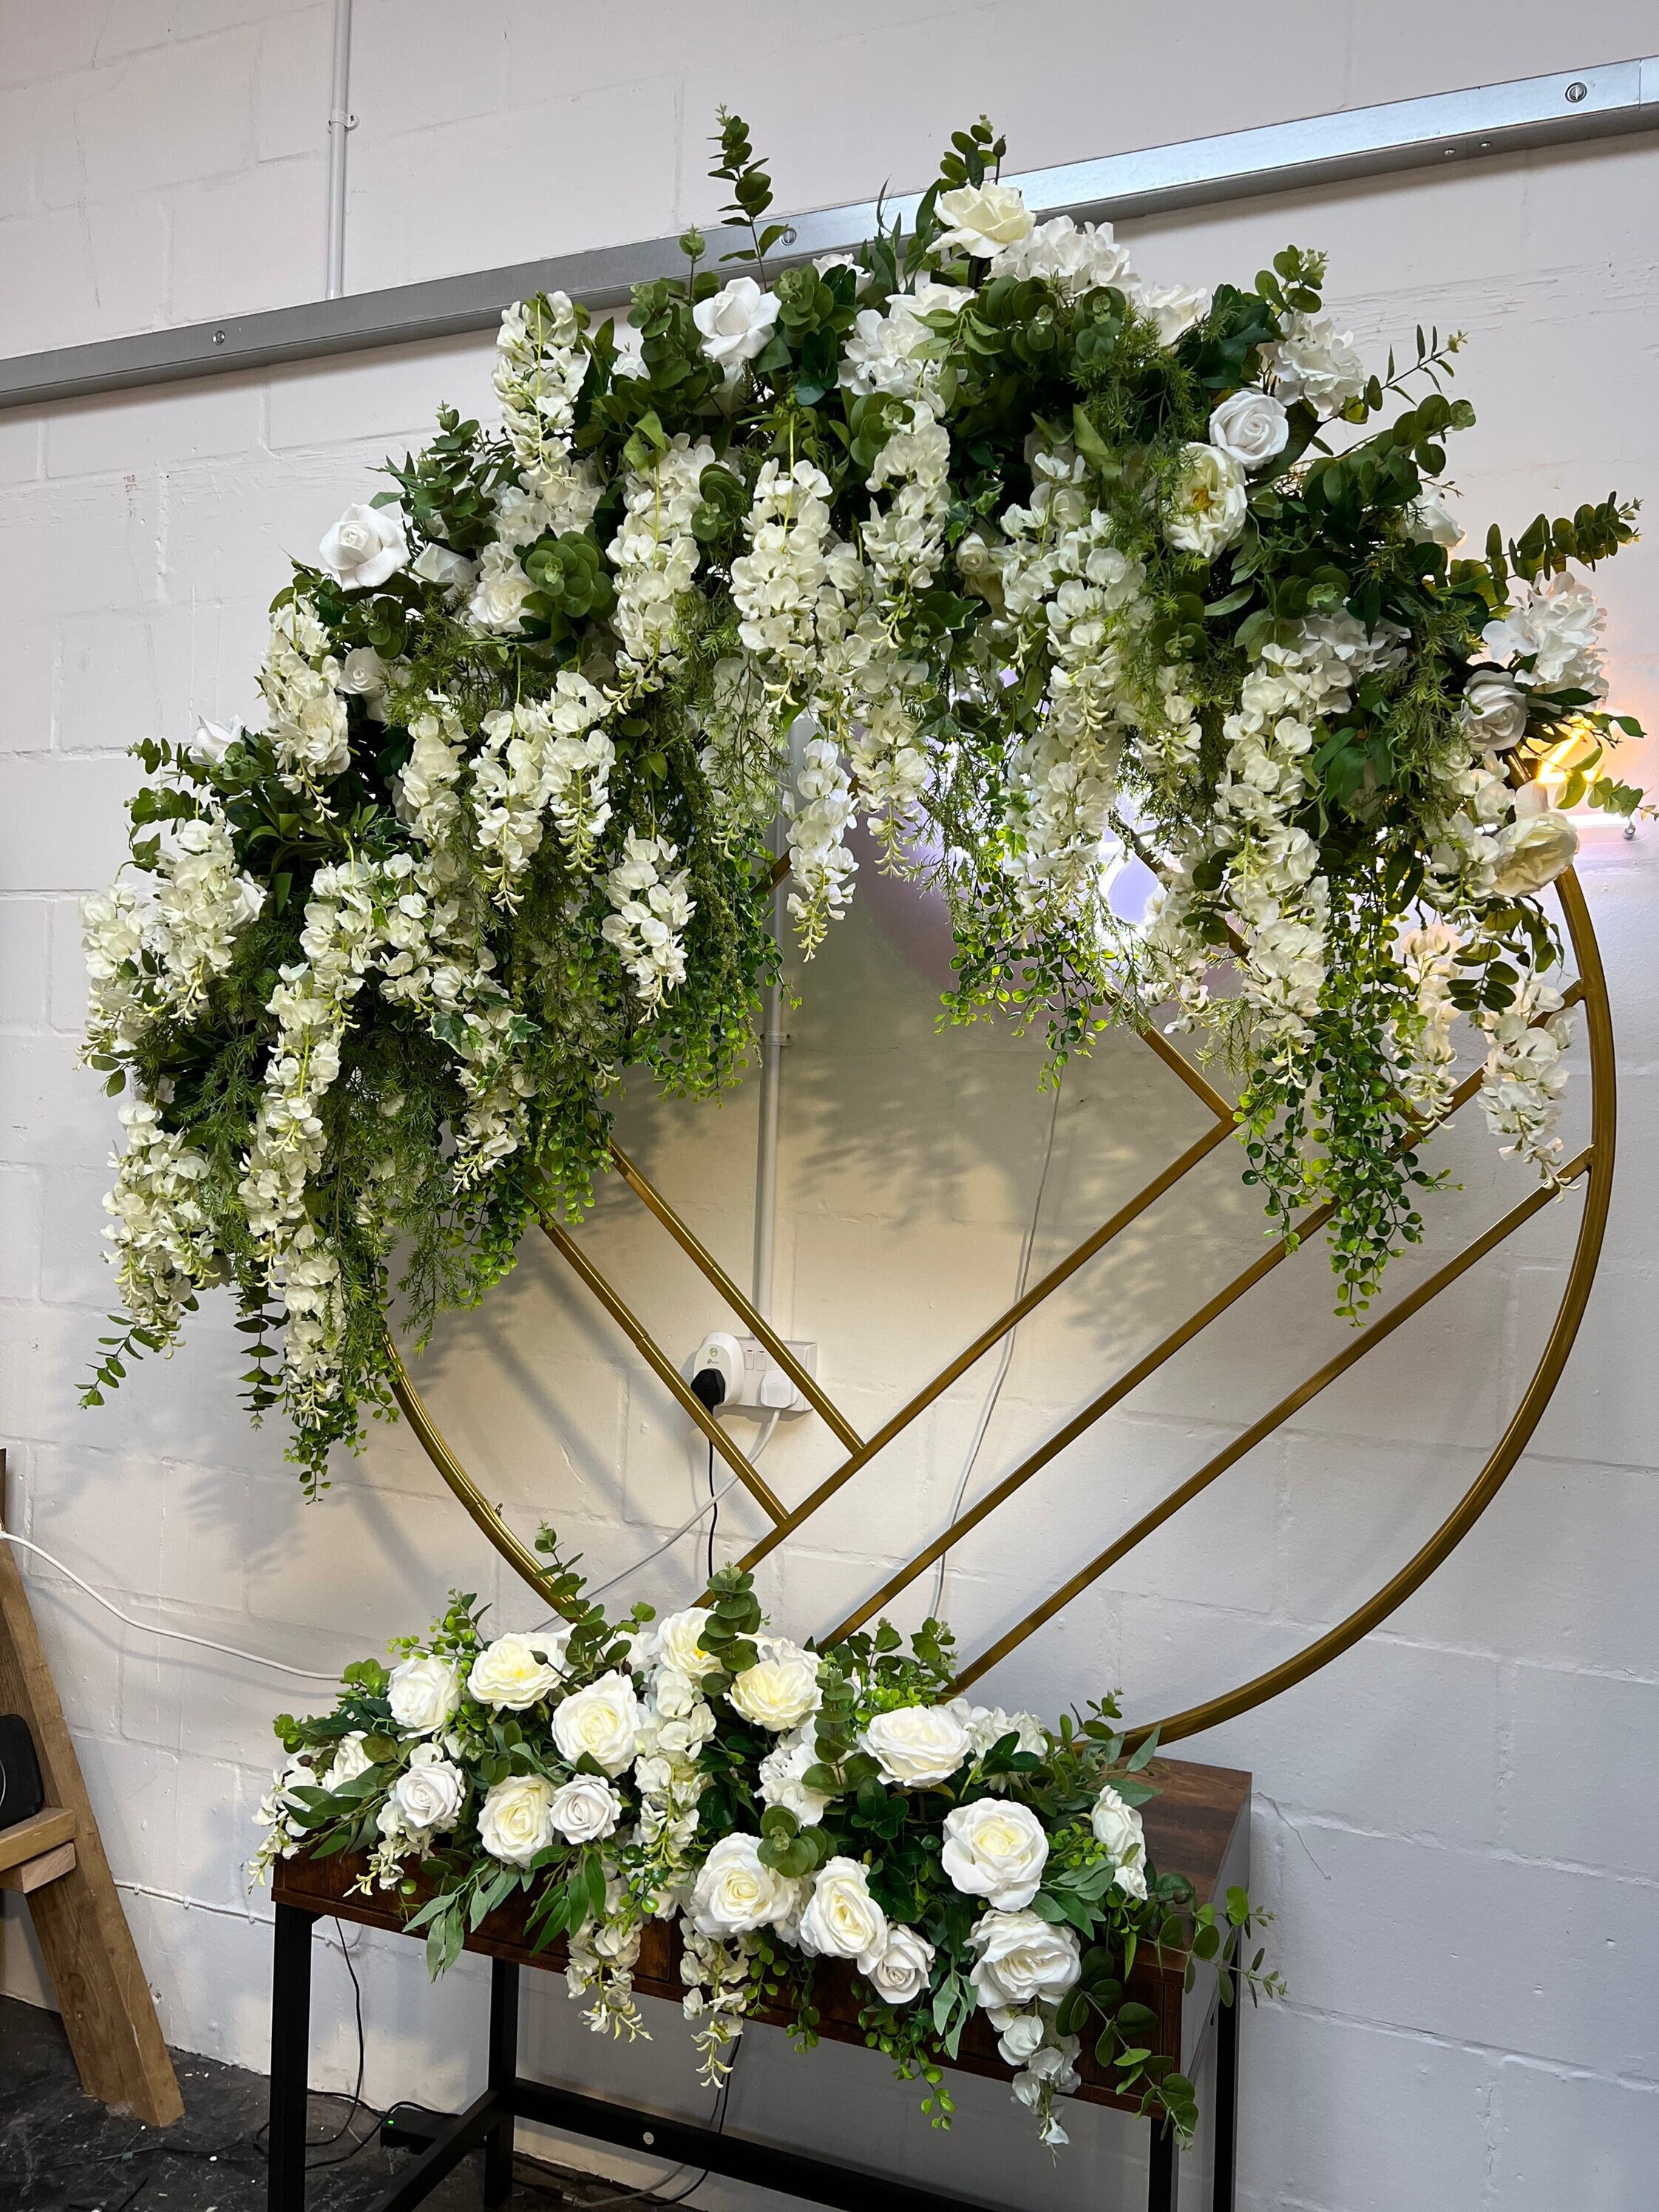 Luxe White Rose Garland, Wisteria Flower Wedding Garland, Flower Backdrop Decor, Arch Garland